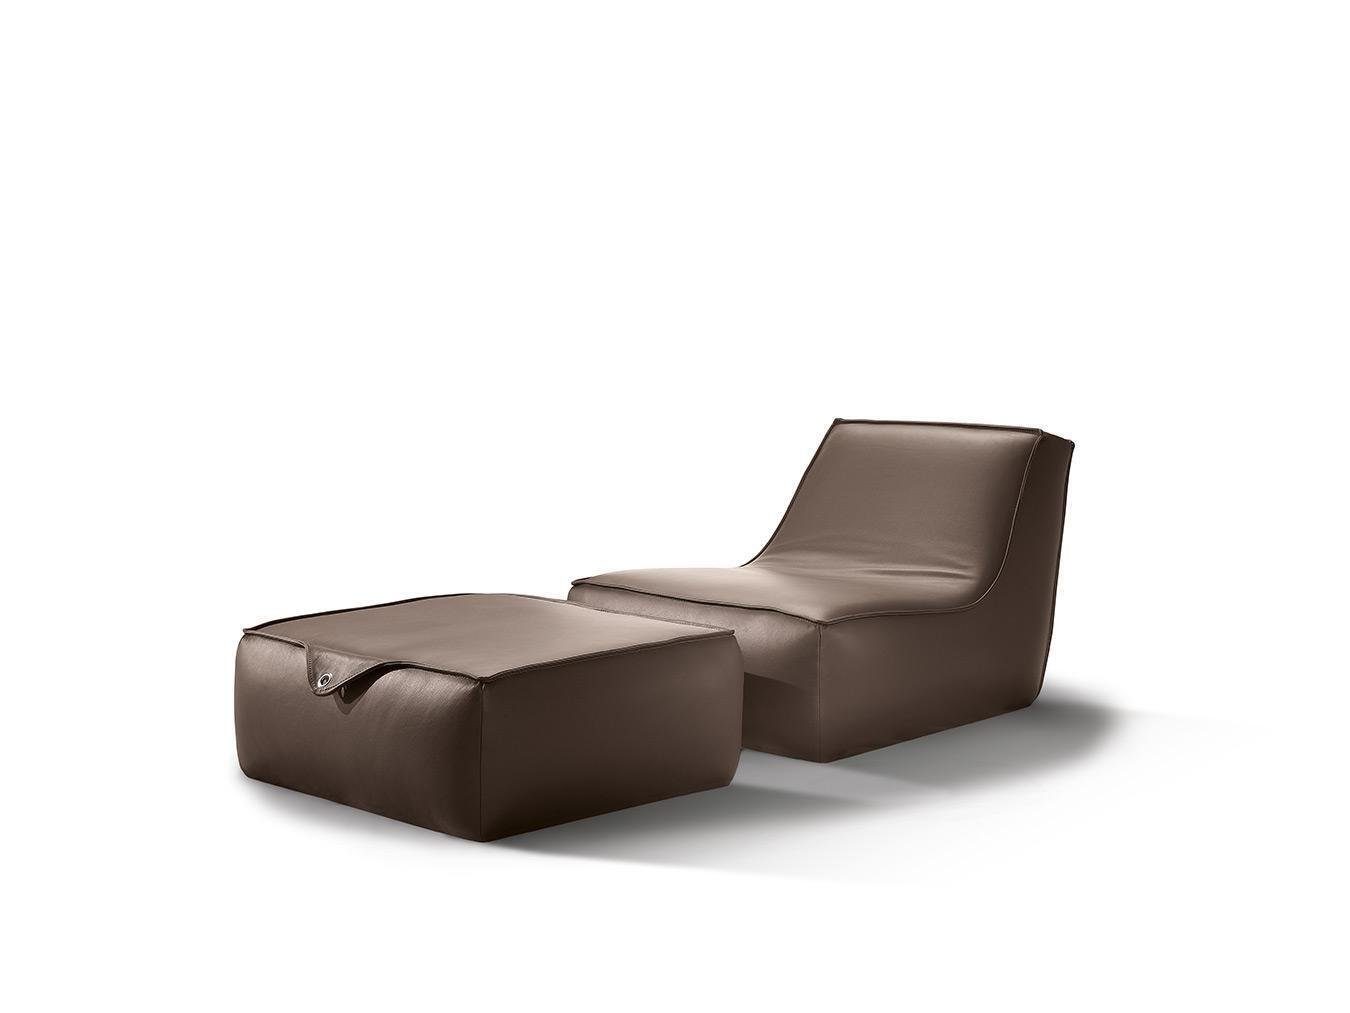 JVmoebel Sessel Design Sessel Hocker Luxus Einsitzer Modern Grau Leder Möbel Einsitzer